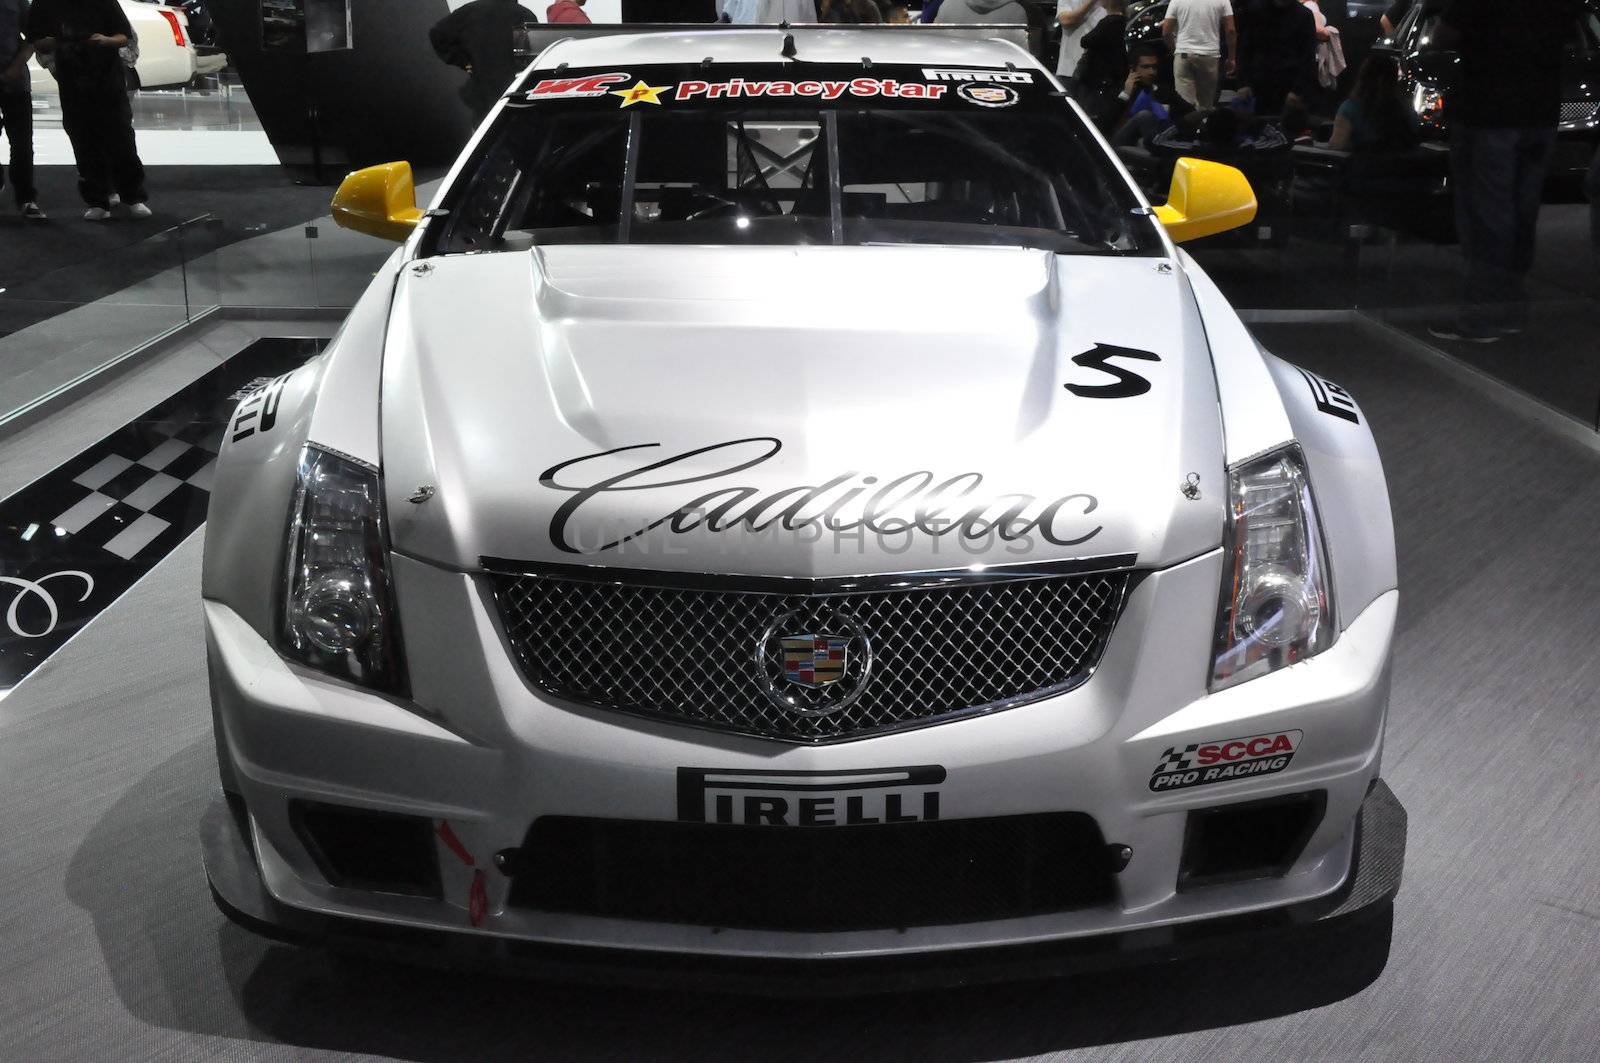 Cadillac CTS-V Race Car by sainaniritu